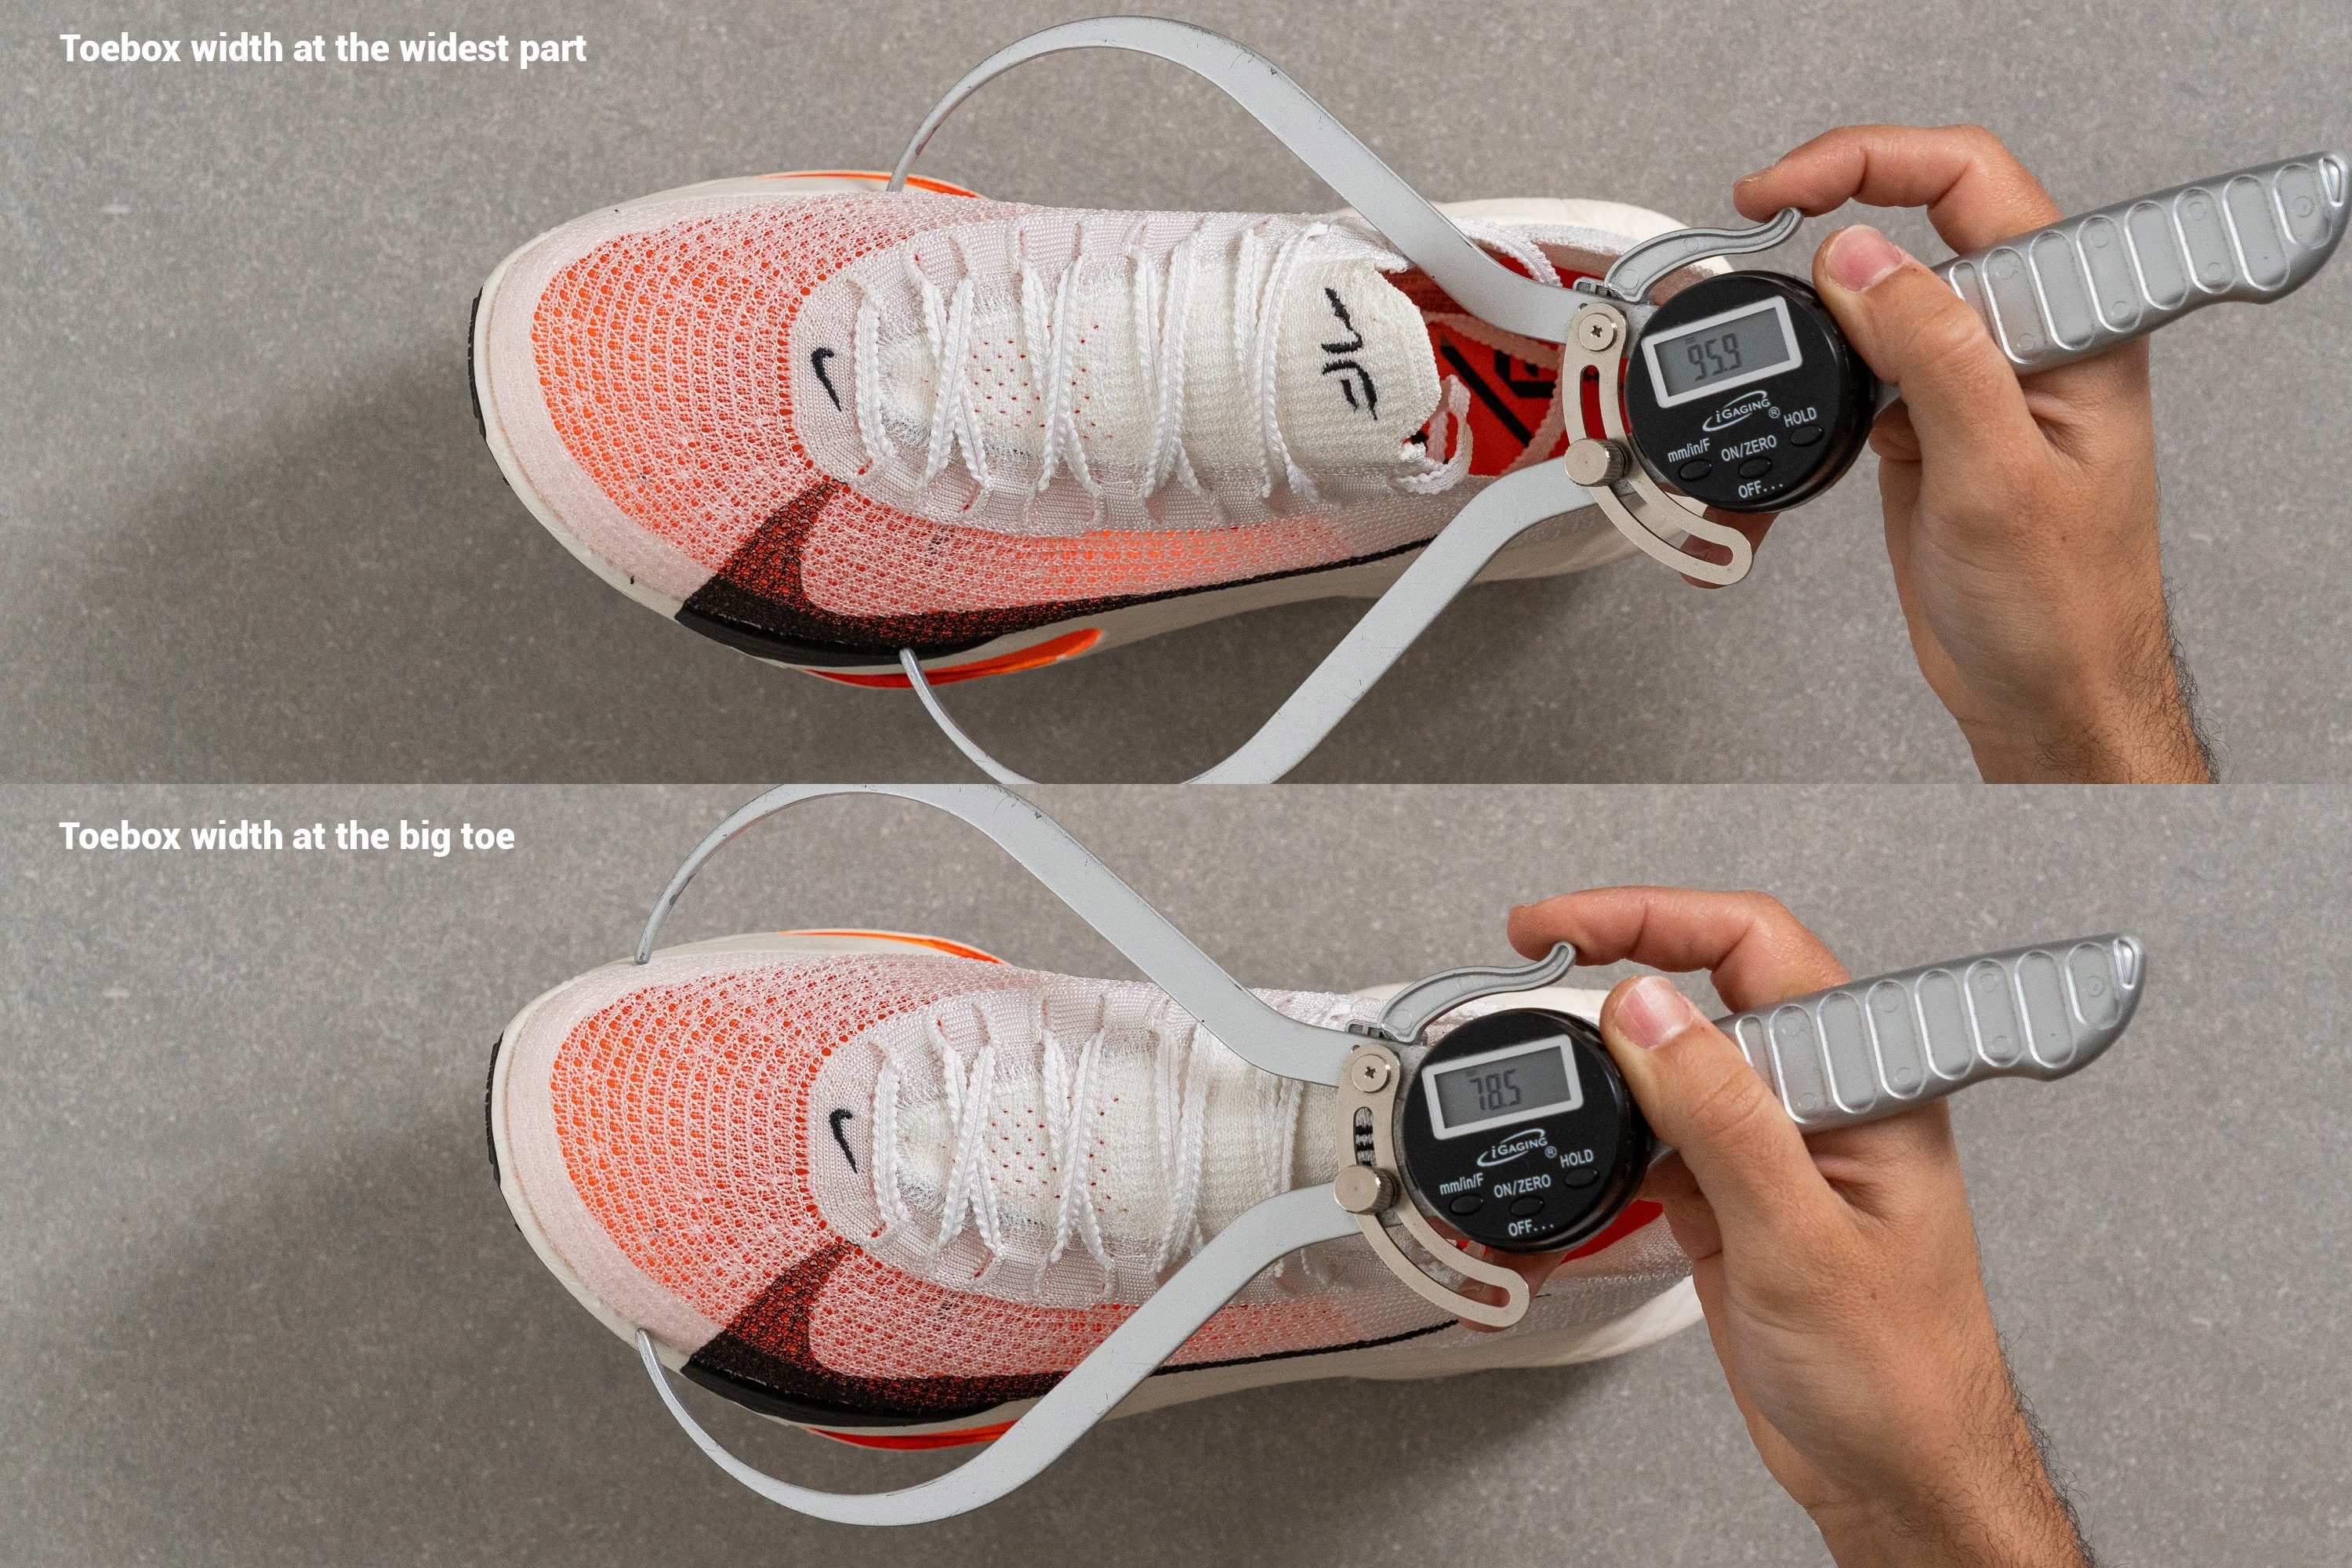 medición de la distancia en zapatillas running.jpg